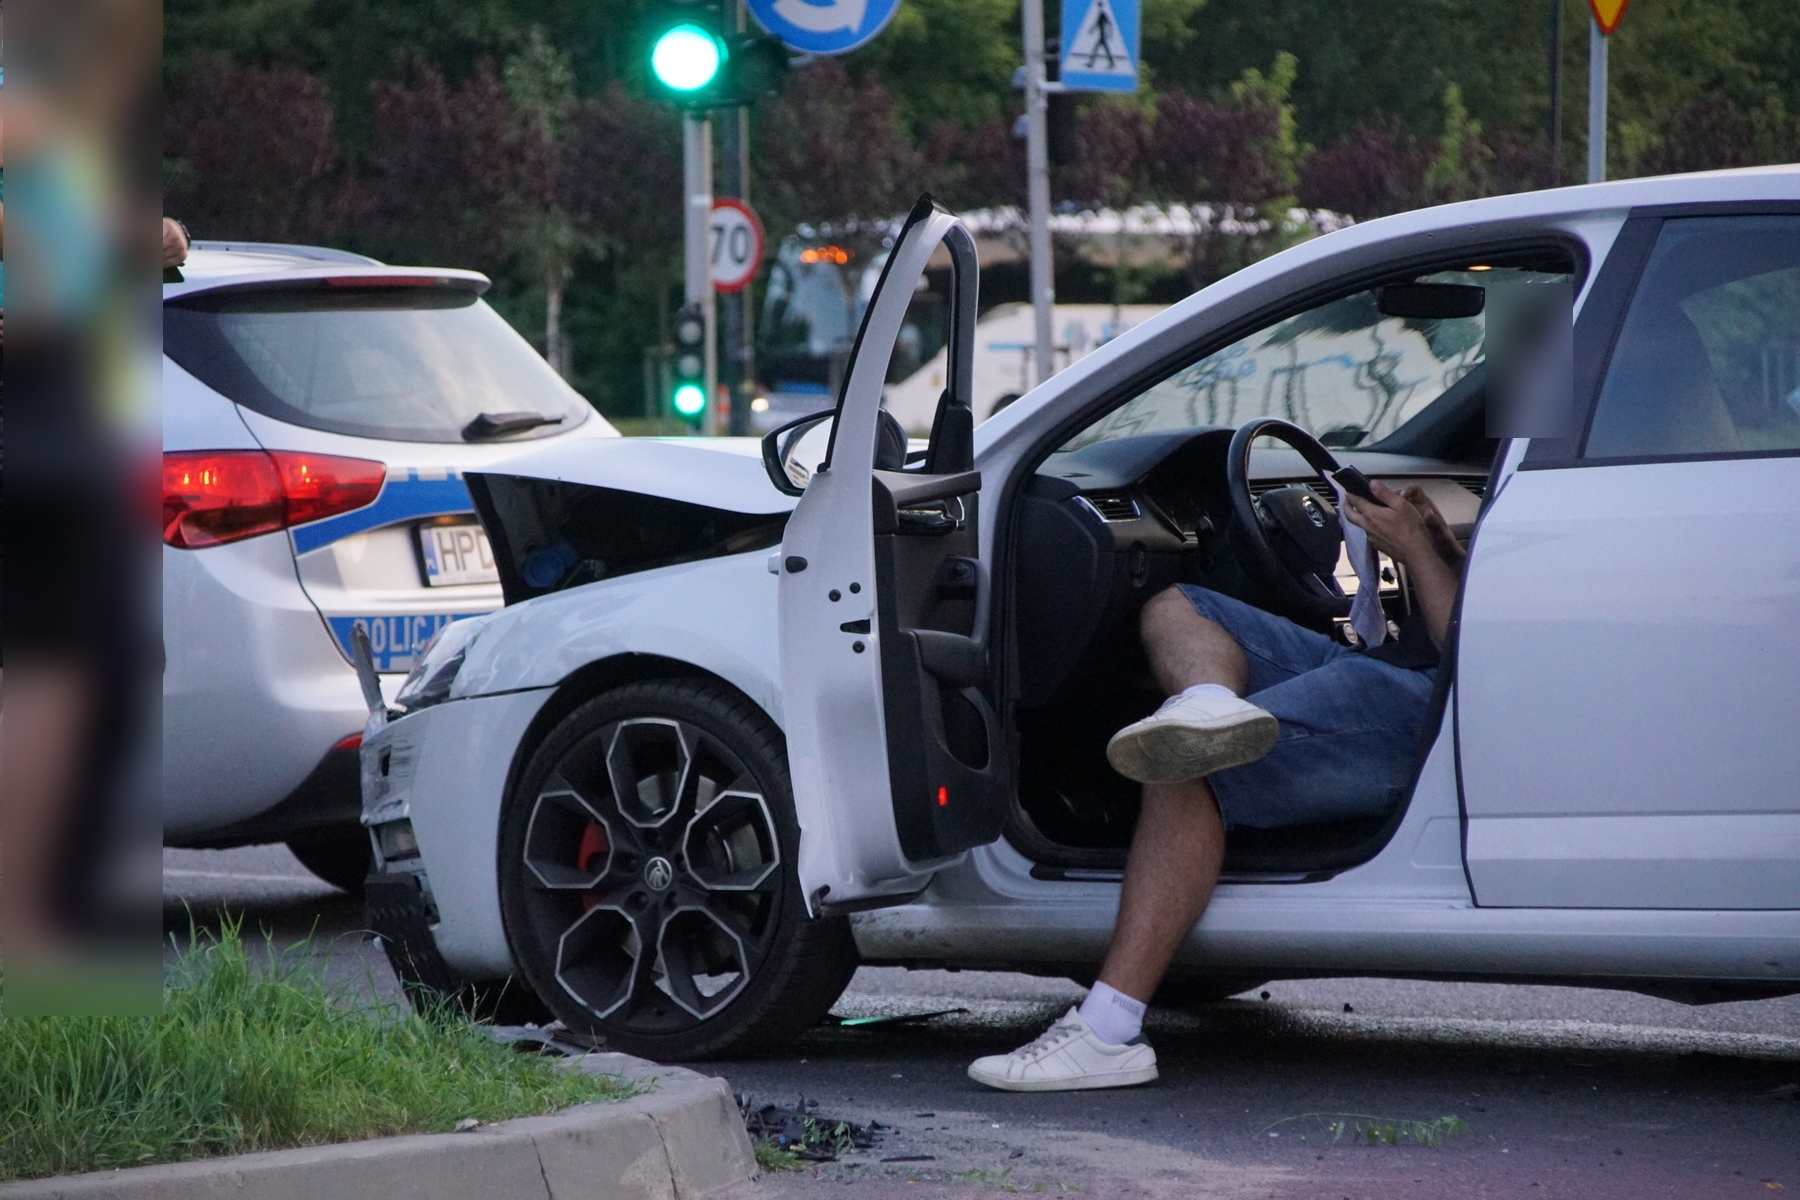 Wymuszenie pierwszeństwa przyczyną zderzenia dwóch pojazdów na skrzyżowaniu w Lublinie (zdjęcia)